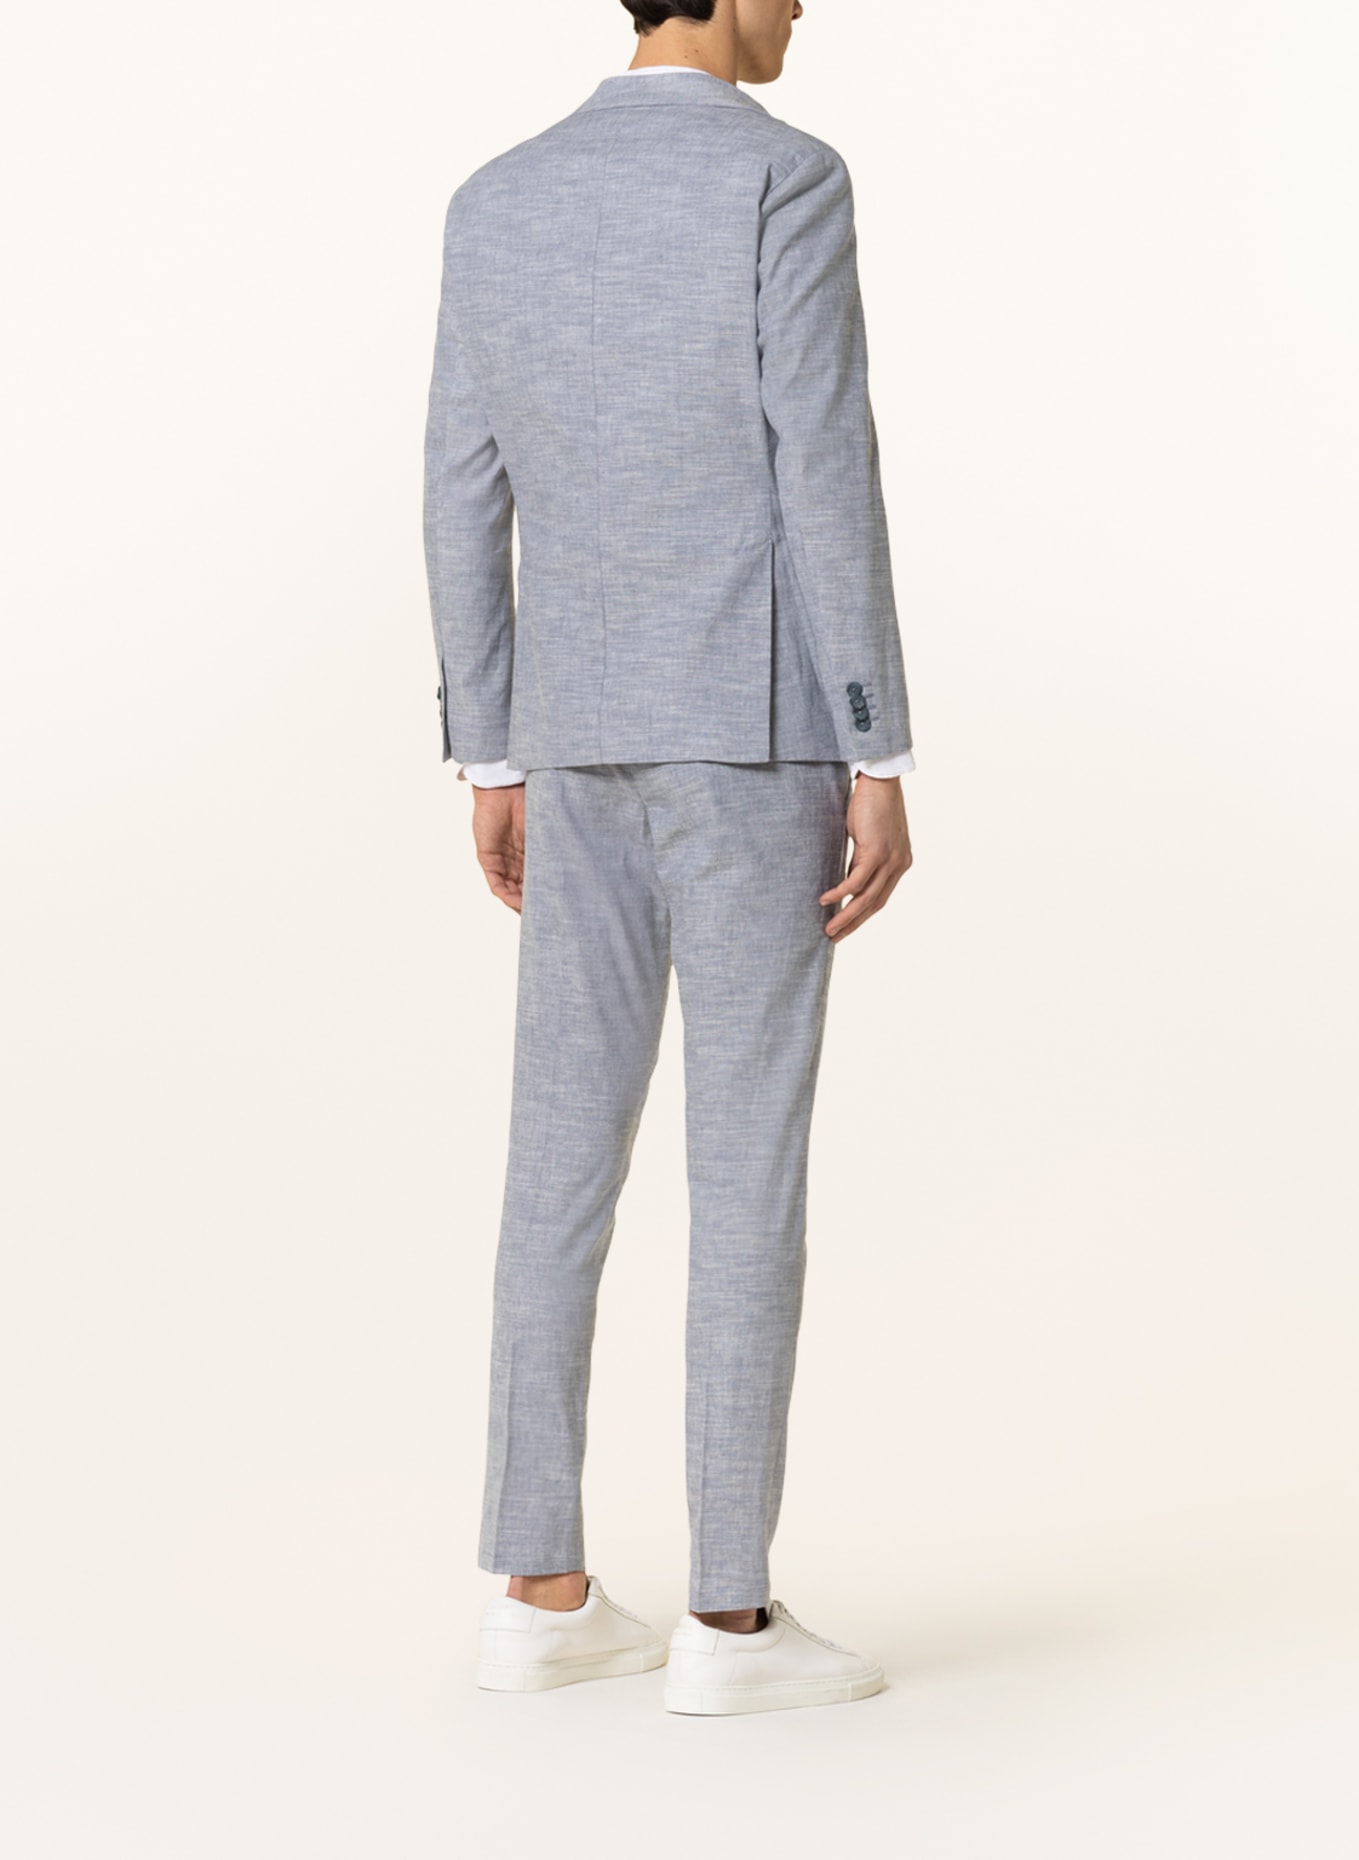 PAUL Suit jacket slim fit with linen, Color: 001 Light Blue (Image 4)